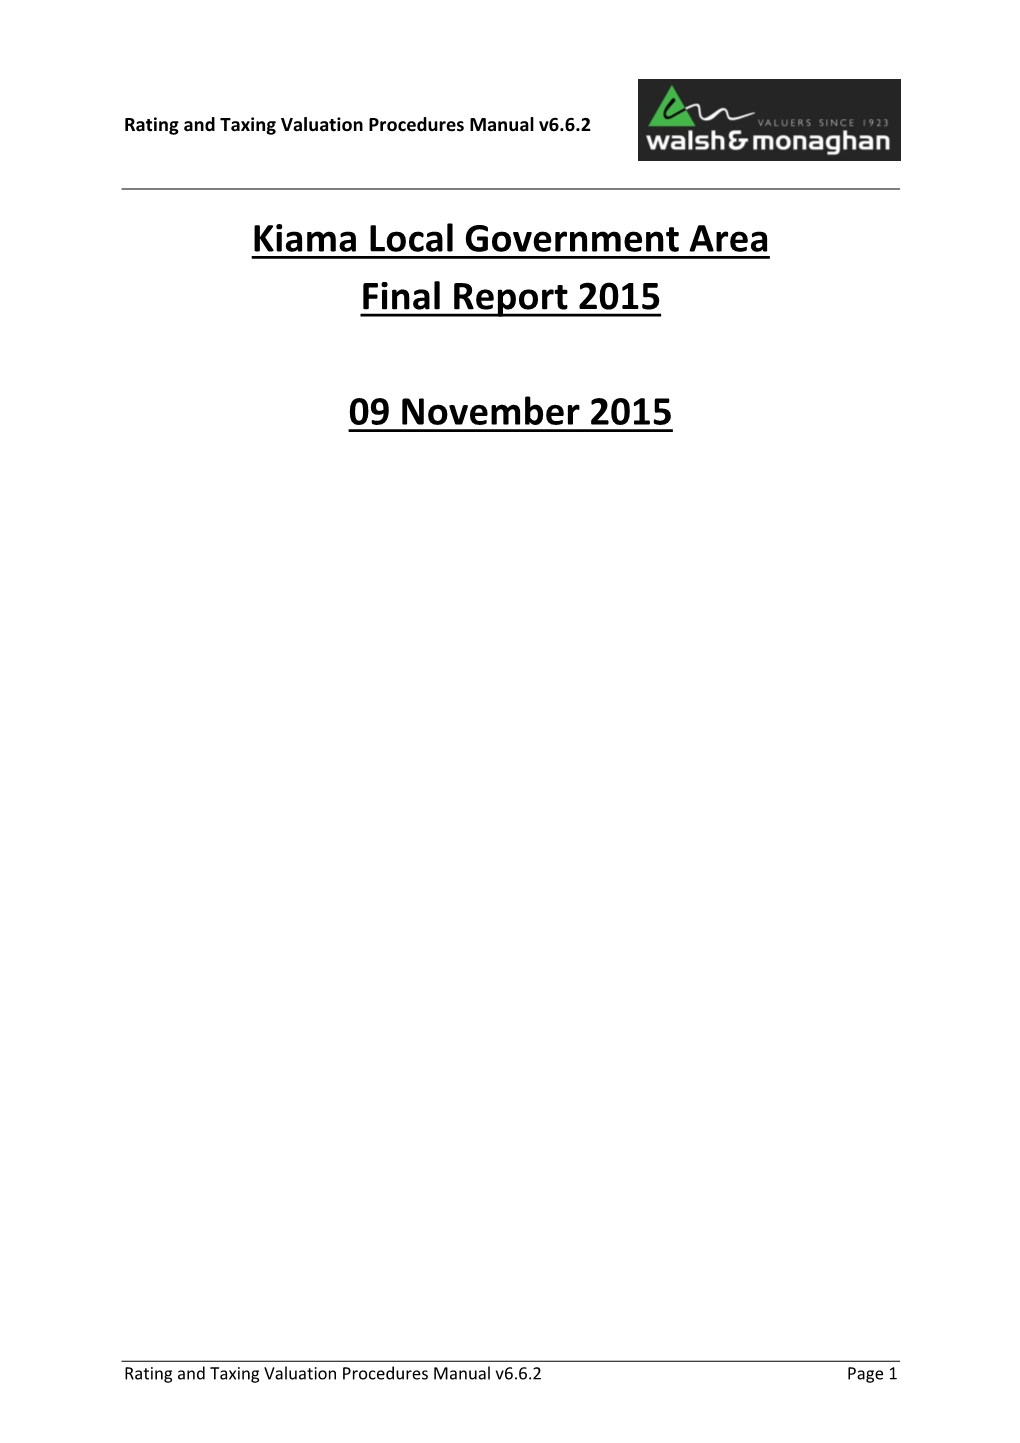 Kiama Local Government Area Final Report 2015 09 November 2015